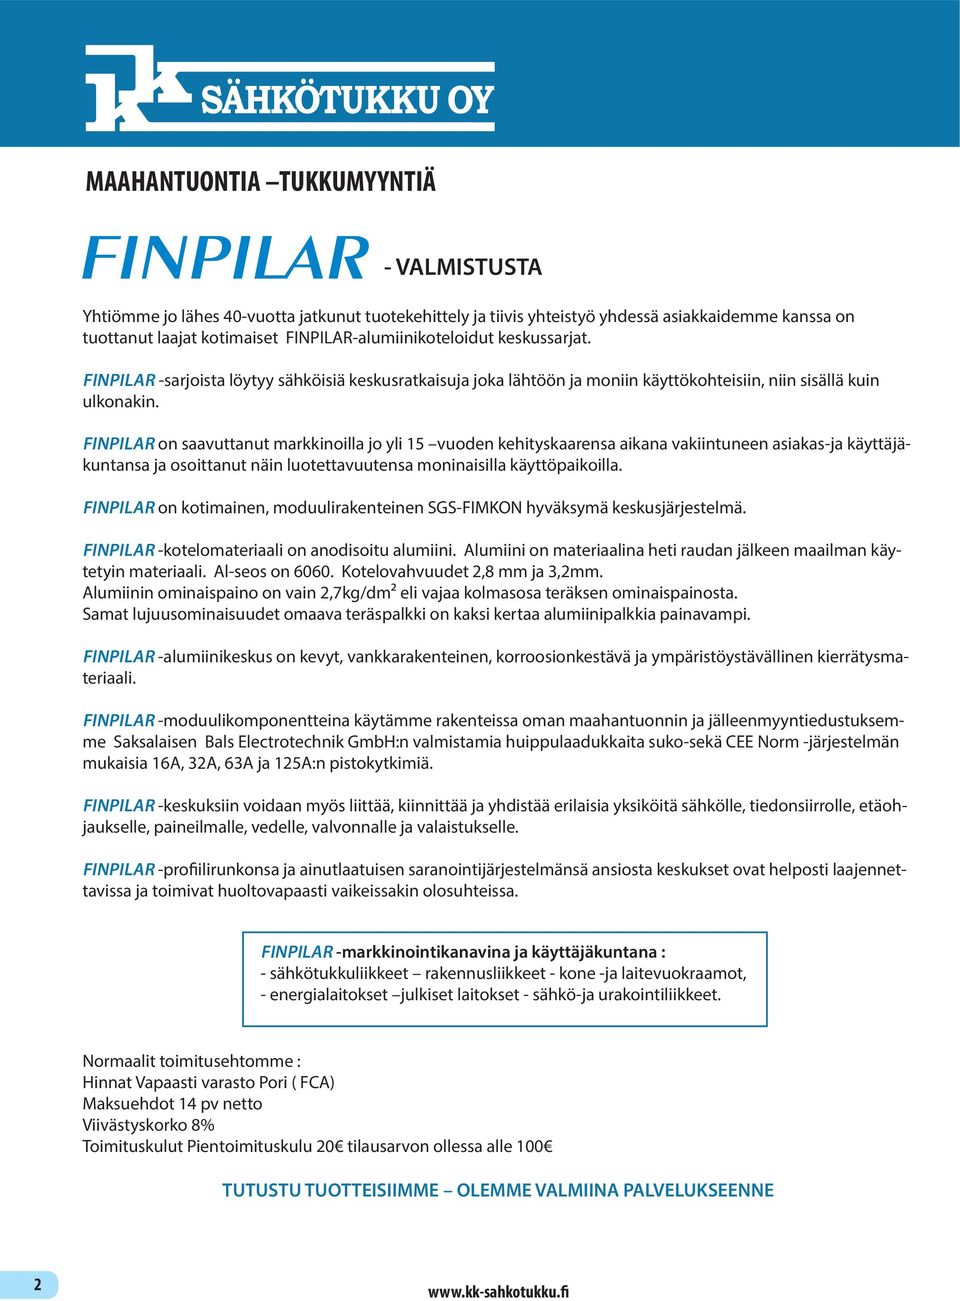 FINPILAR on saavuttanut markkinoilla jo yli 15 vuoden kehityskaarensa aikana vakiintuneen asiakas-ja käyttäjäkuntansa ja osoittanut näin luotettavuutensa moninaisilla käyttöpaikoilla.